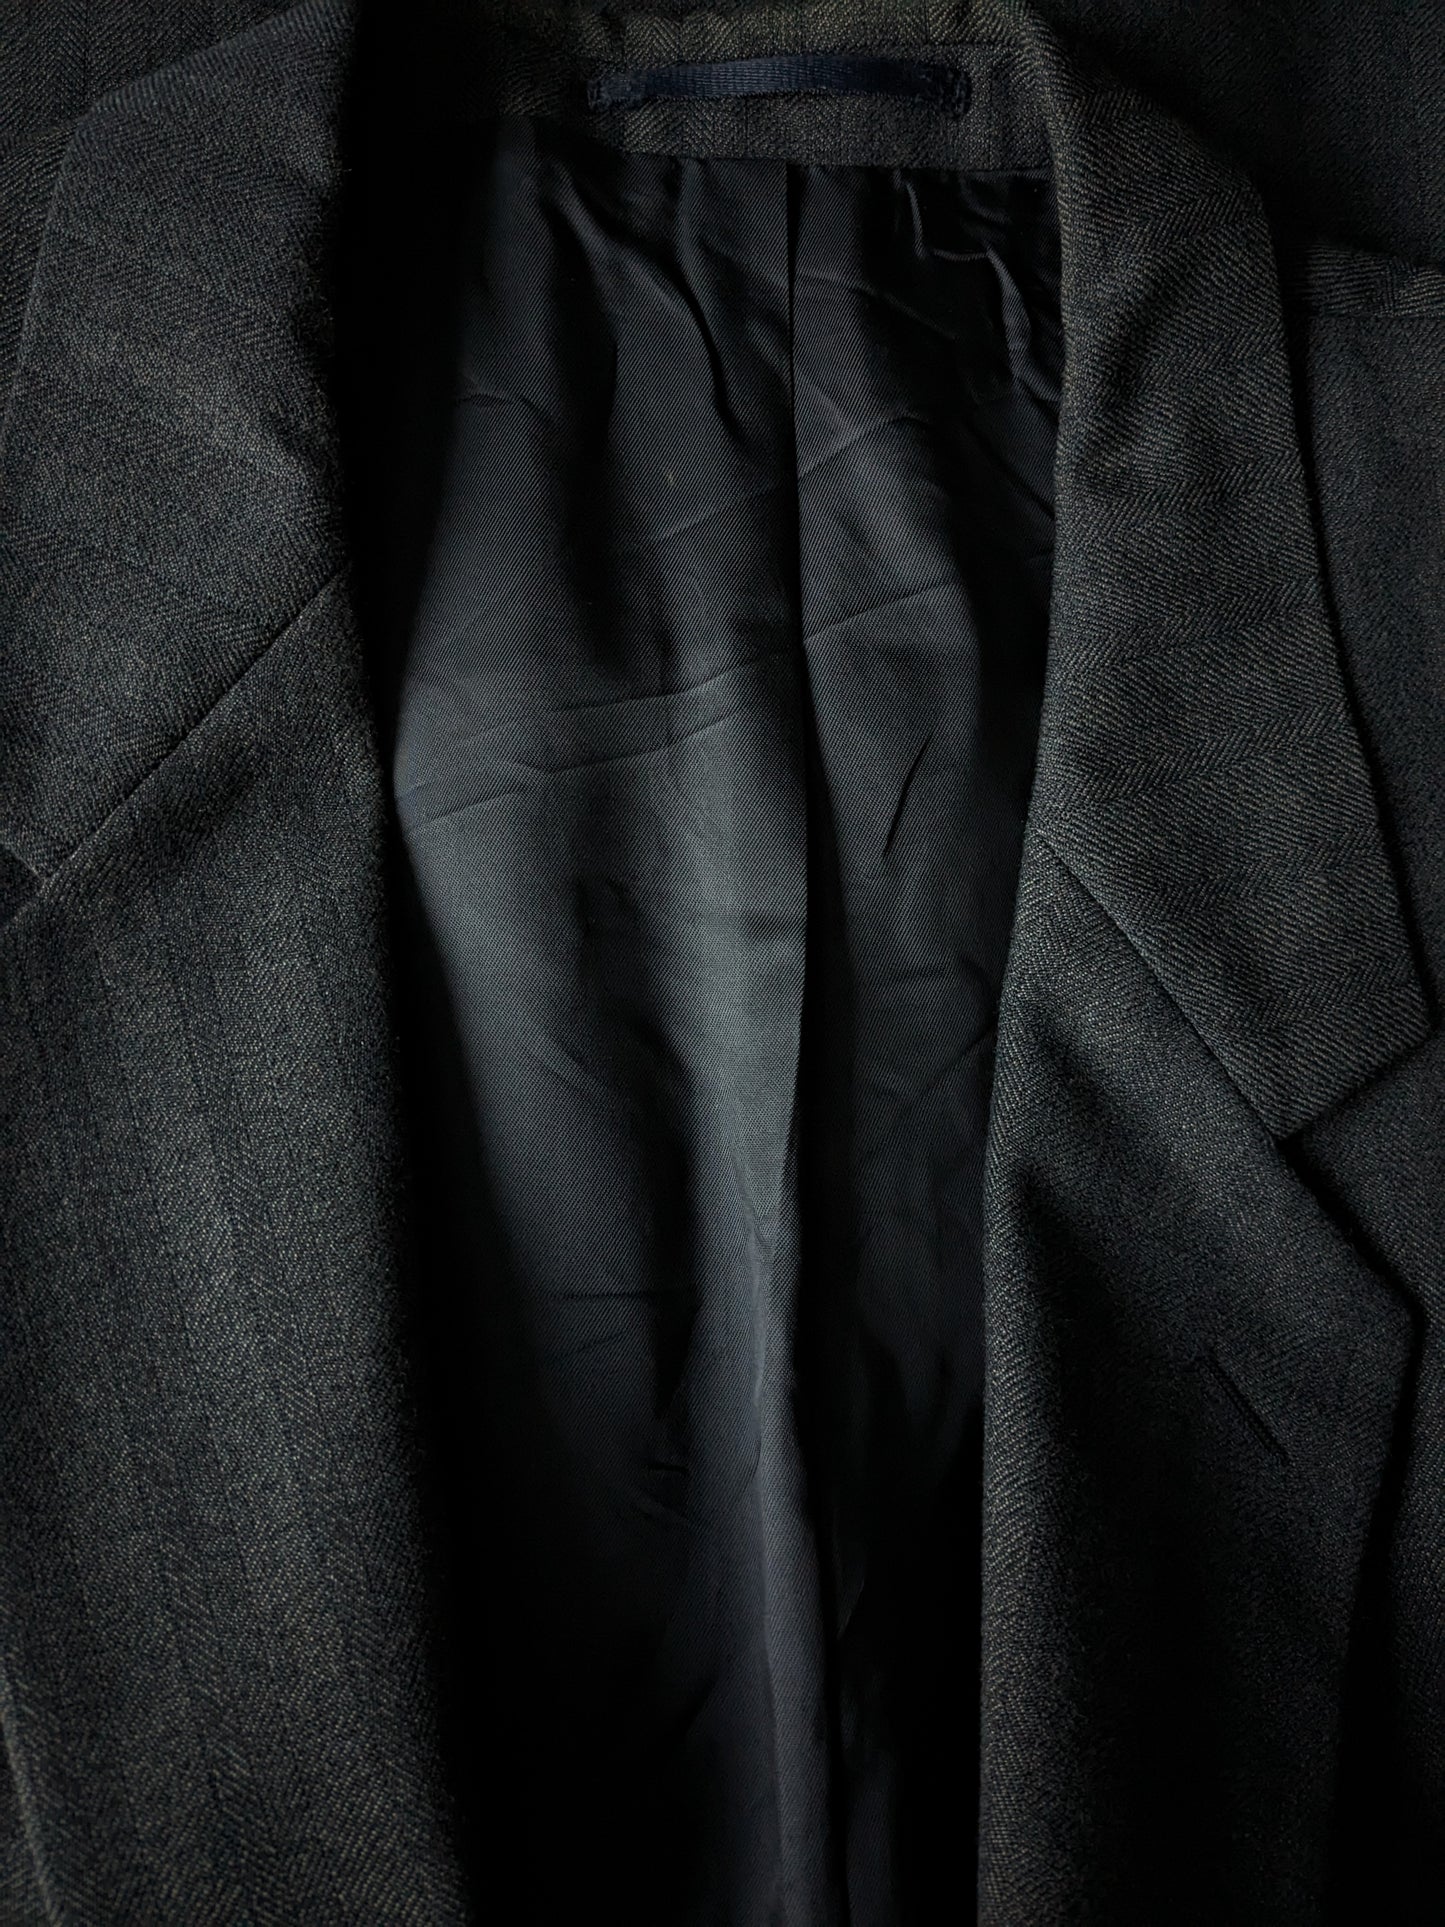 Giacca di lana Varteks. Motivo a spina di pesce nero grigio. Taglia 56 / XL. 45% lana.